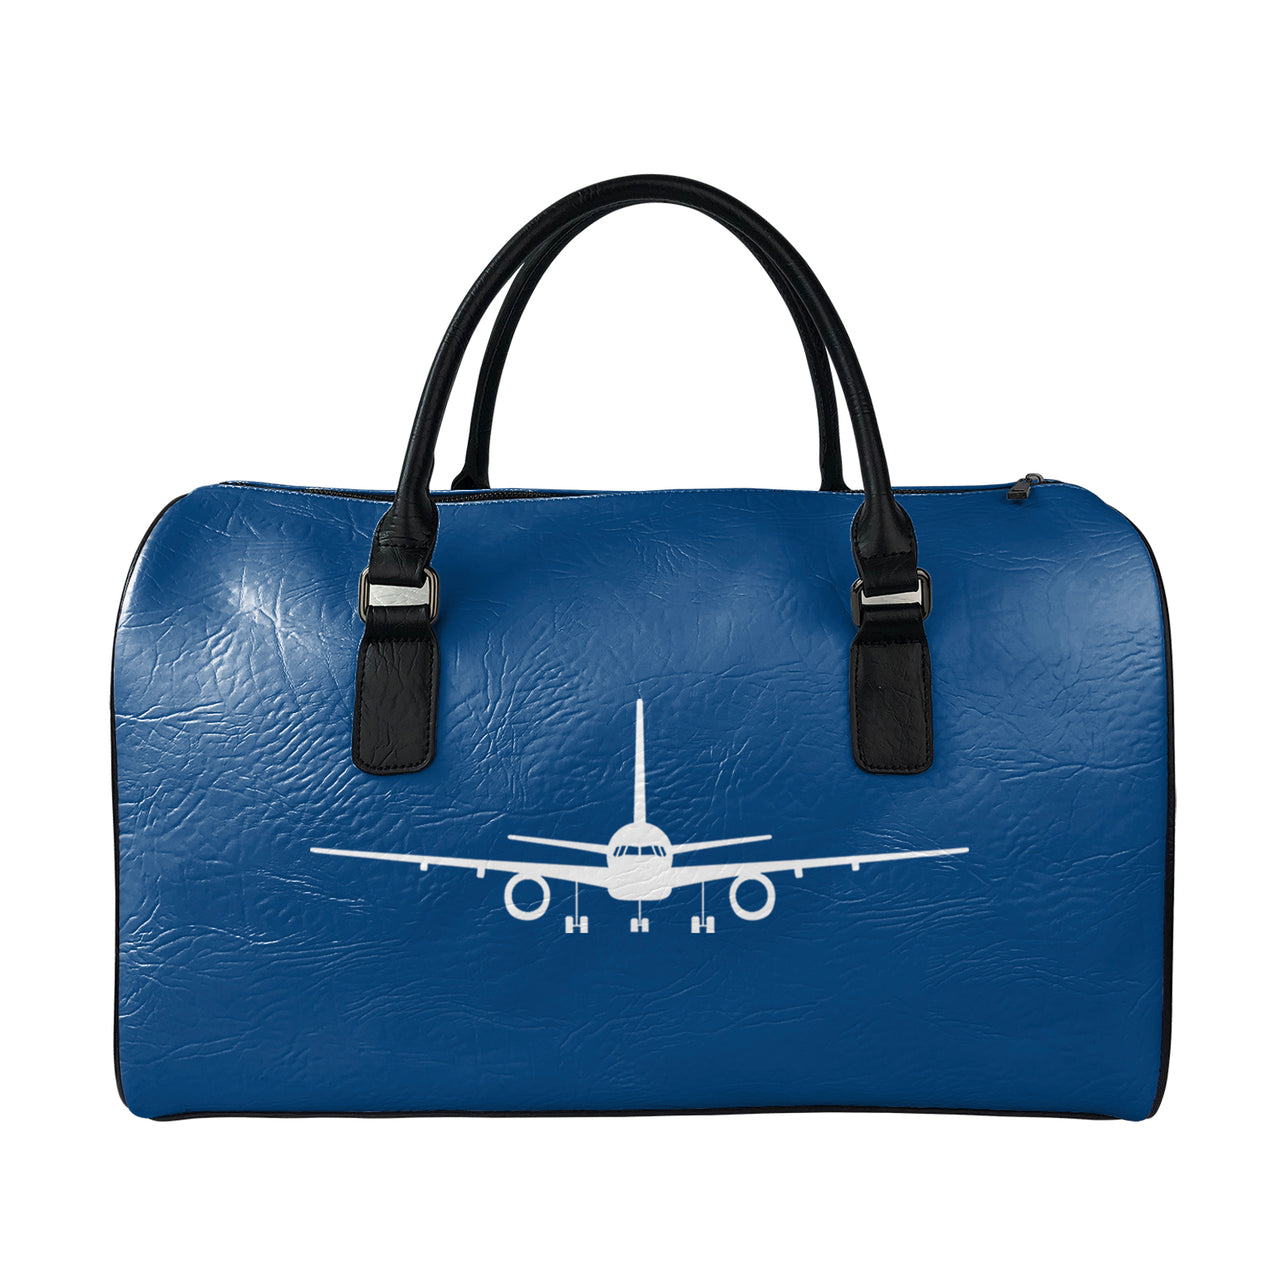 Boeing leather weekend bag